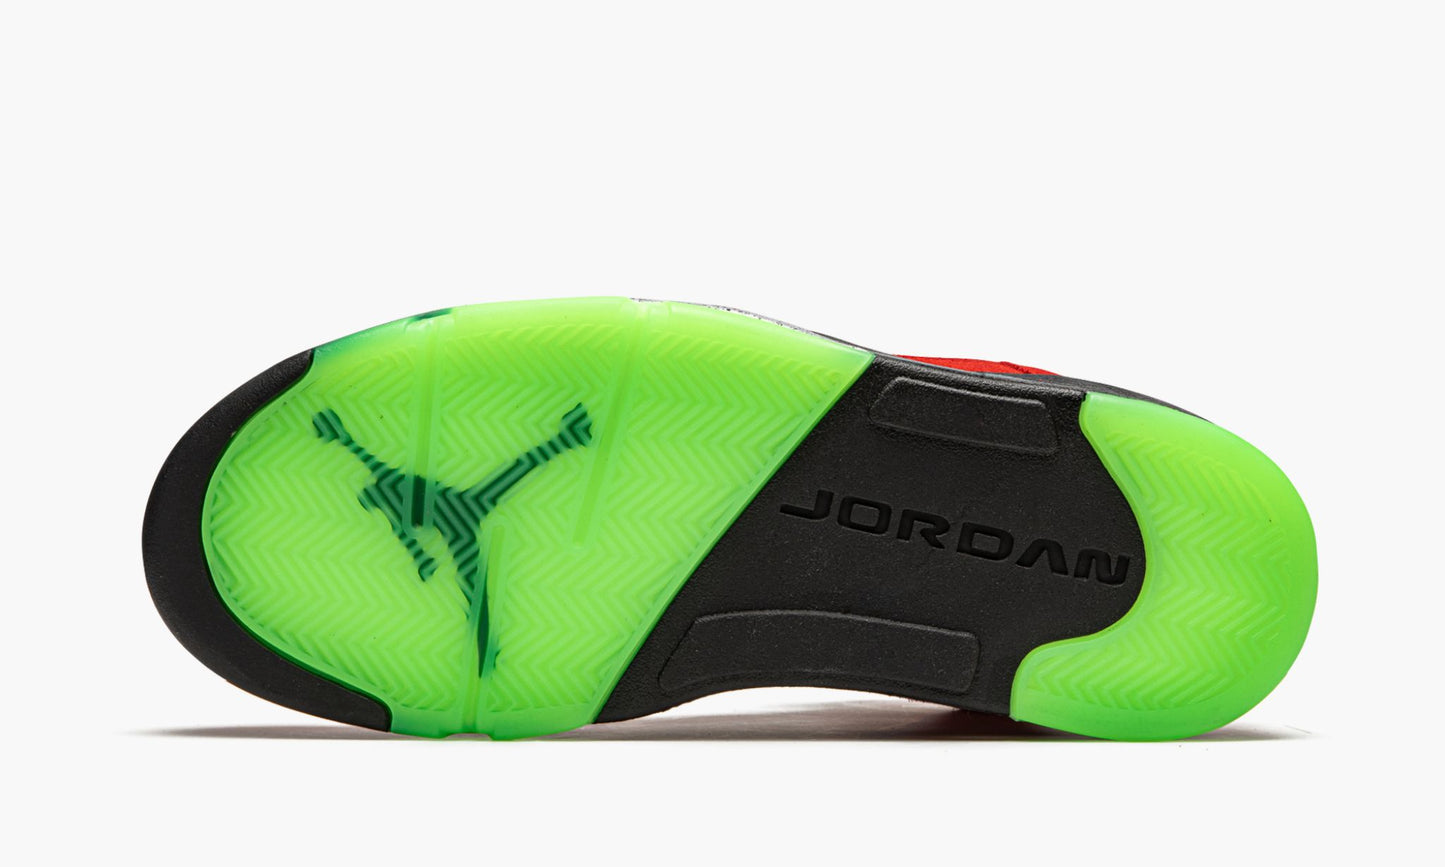 Air Jordan 5 Retro "What The"